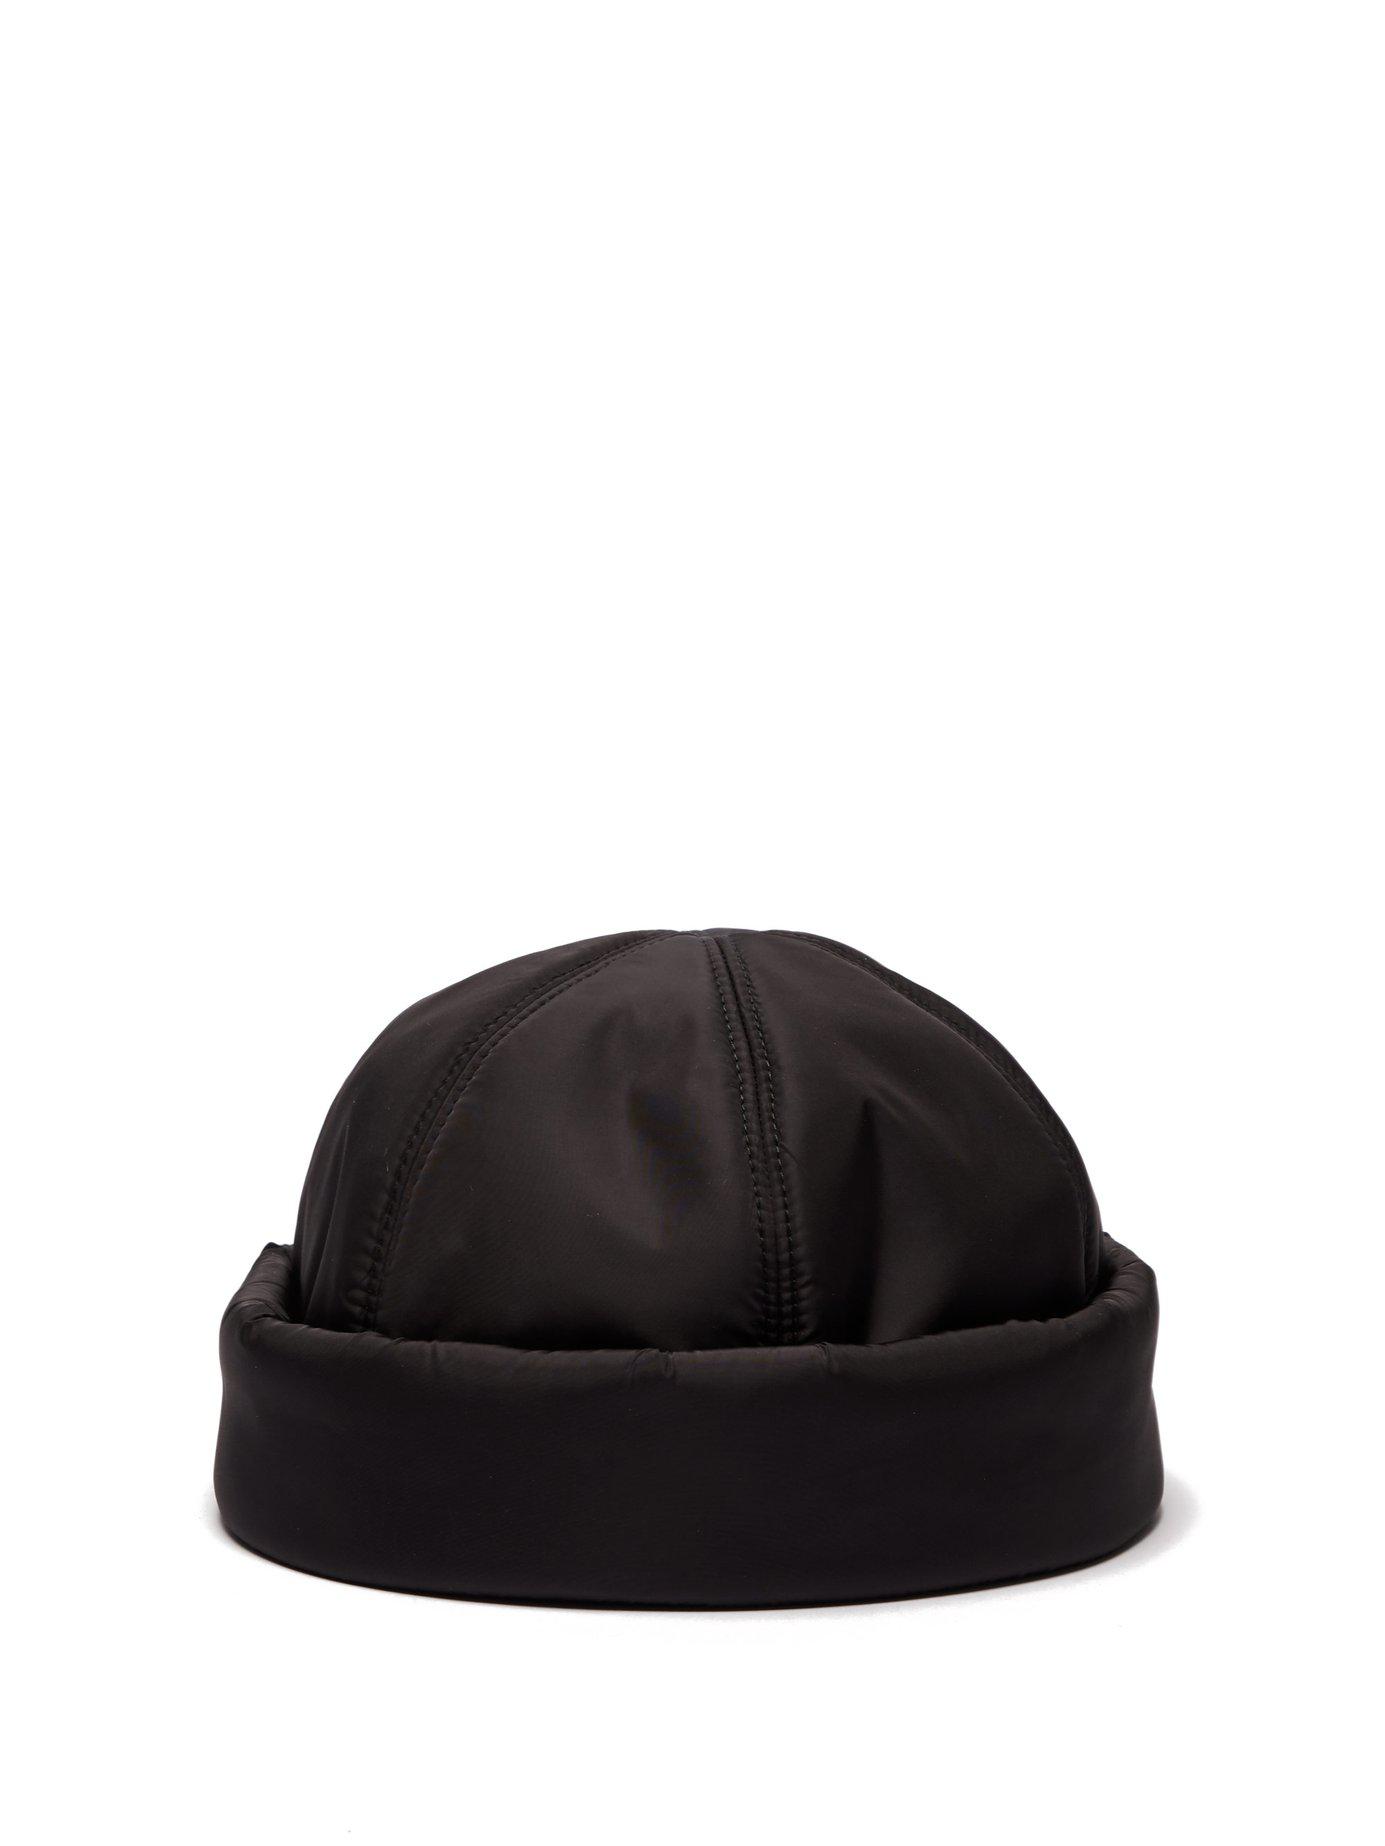 Prada Synthetic Padded Nylon Beanie Hat in Black for Men - Lyst